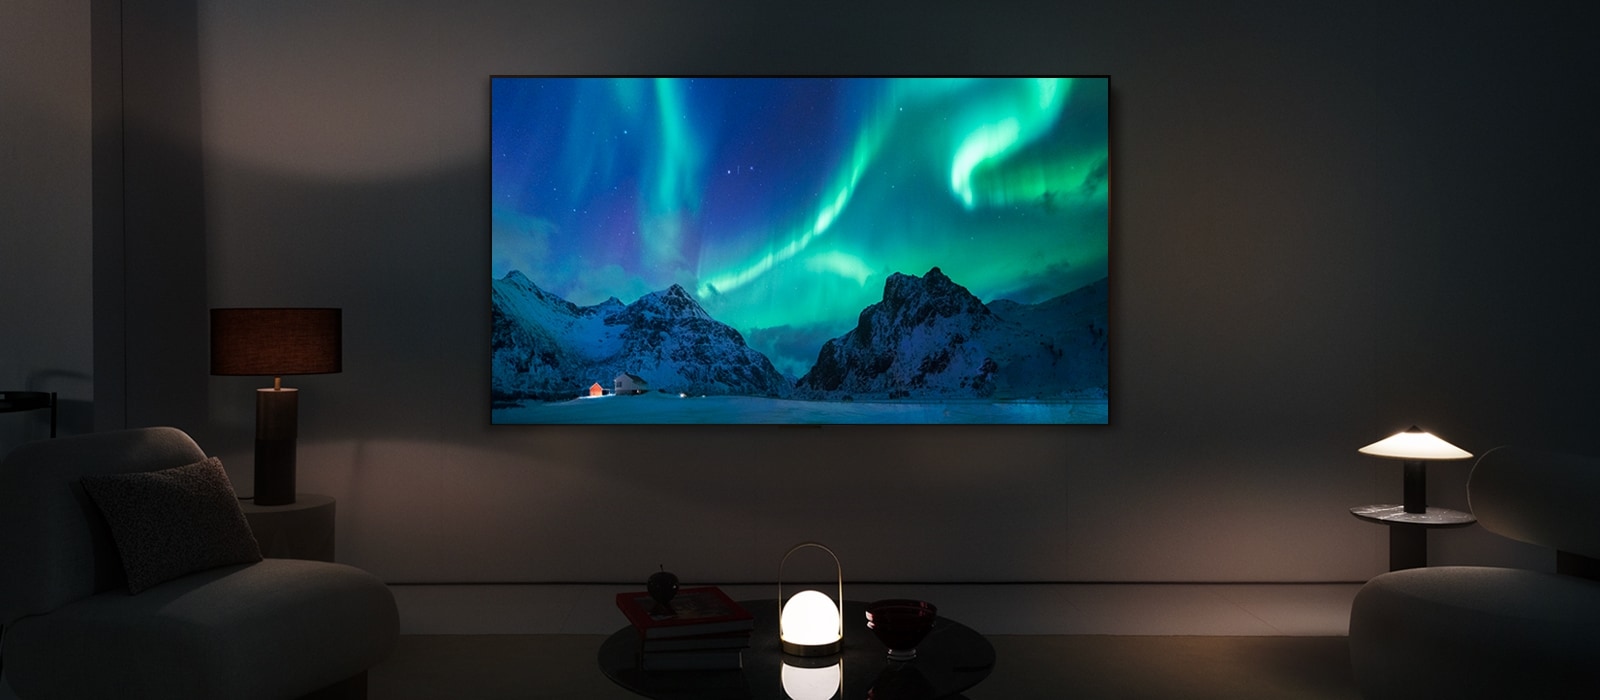 LG OLED TV i LG soundbar u savremenom životnom prostoru tokom noći. Na ekranu se prikazuje aurora borealis uz idealne nivoe osvetljenosti.